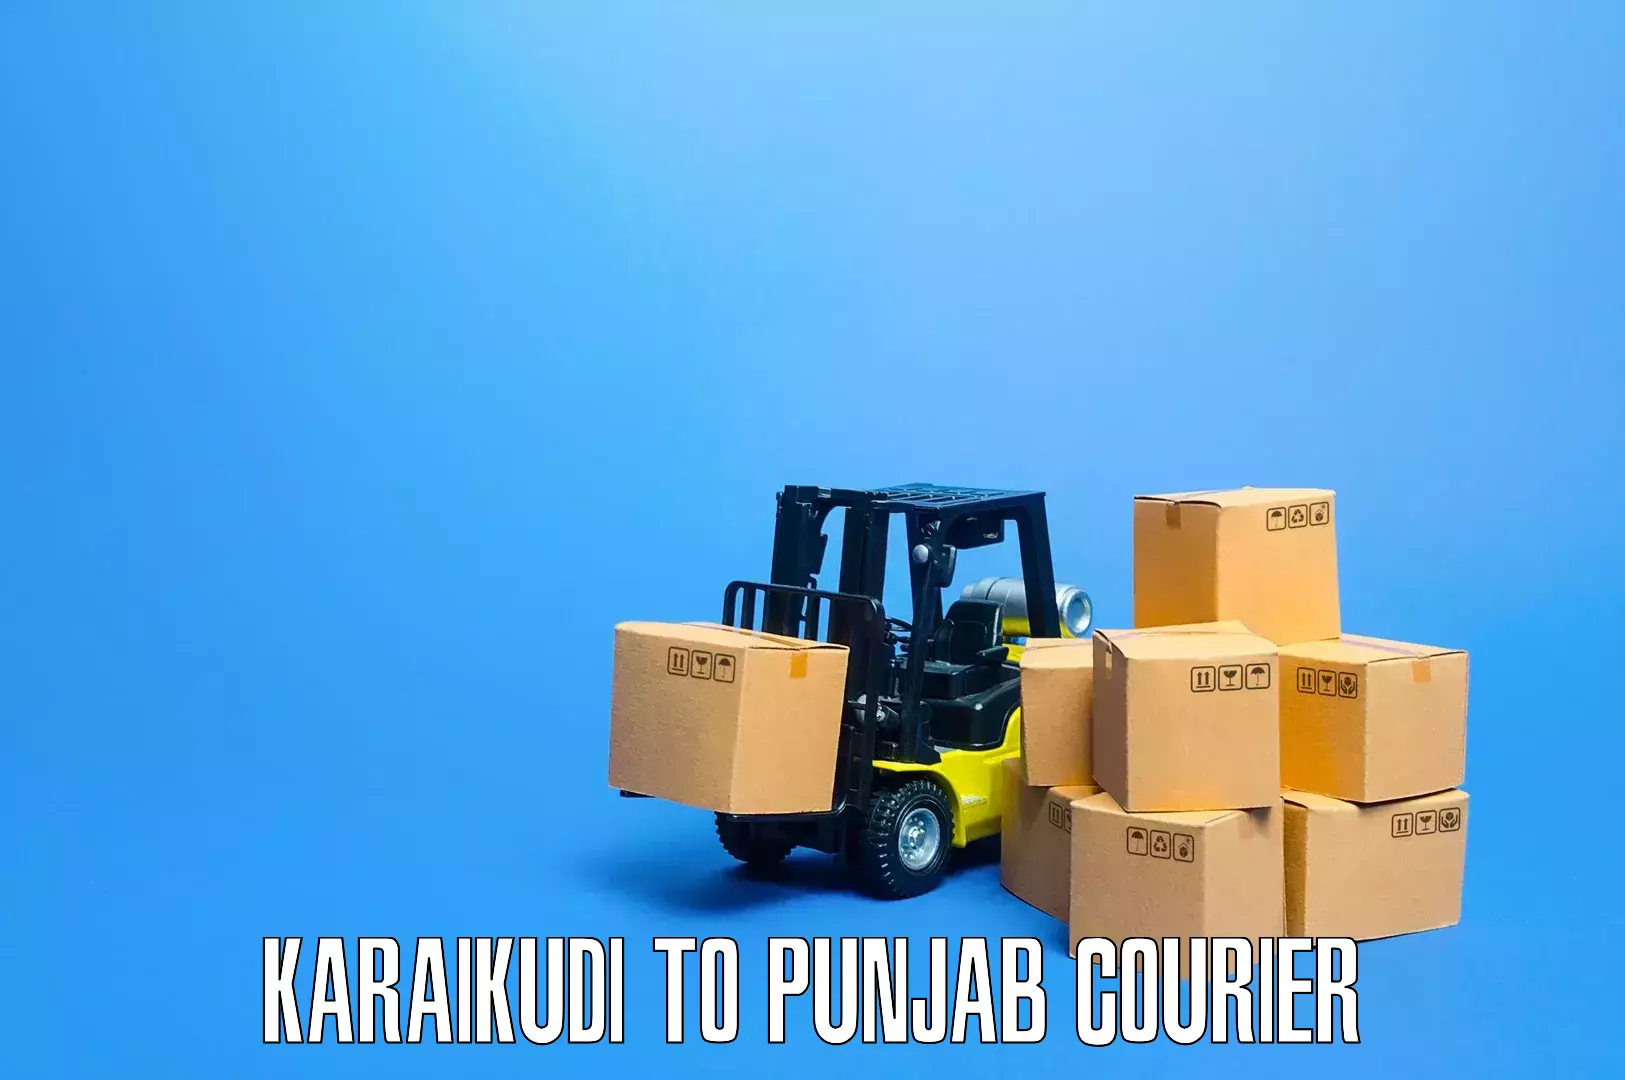 Nationwide moving services Karaikudi to Mukerian